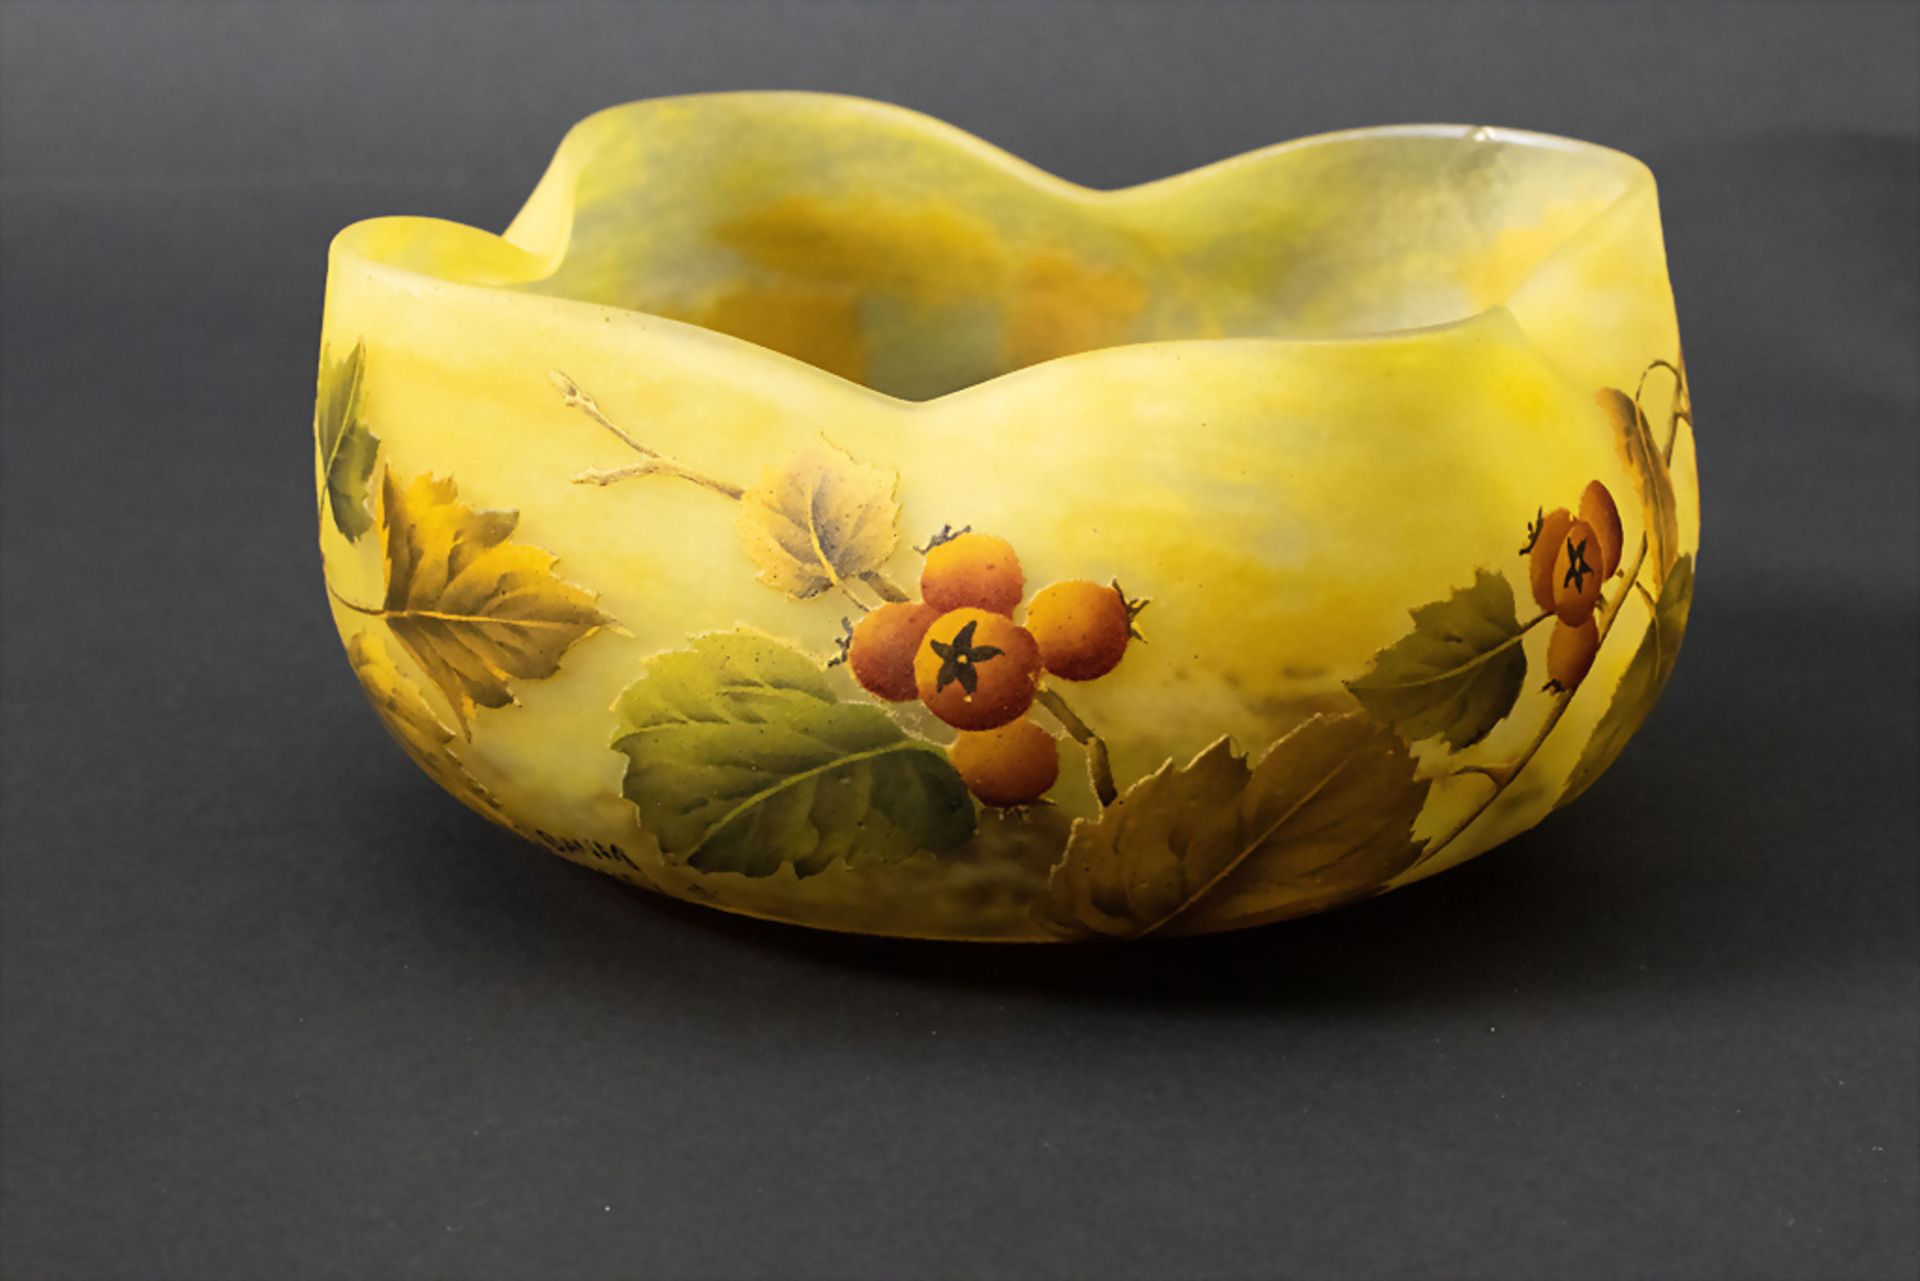 Jugendstil Schale 'Hagebutte' / An Art Nouveau bowl 'Rosehip', Daum, Nancy, um 1900